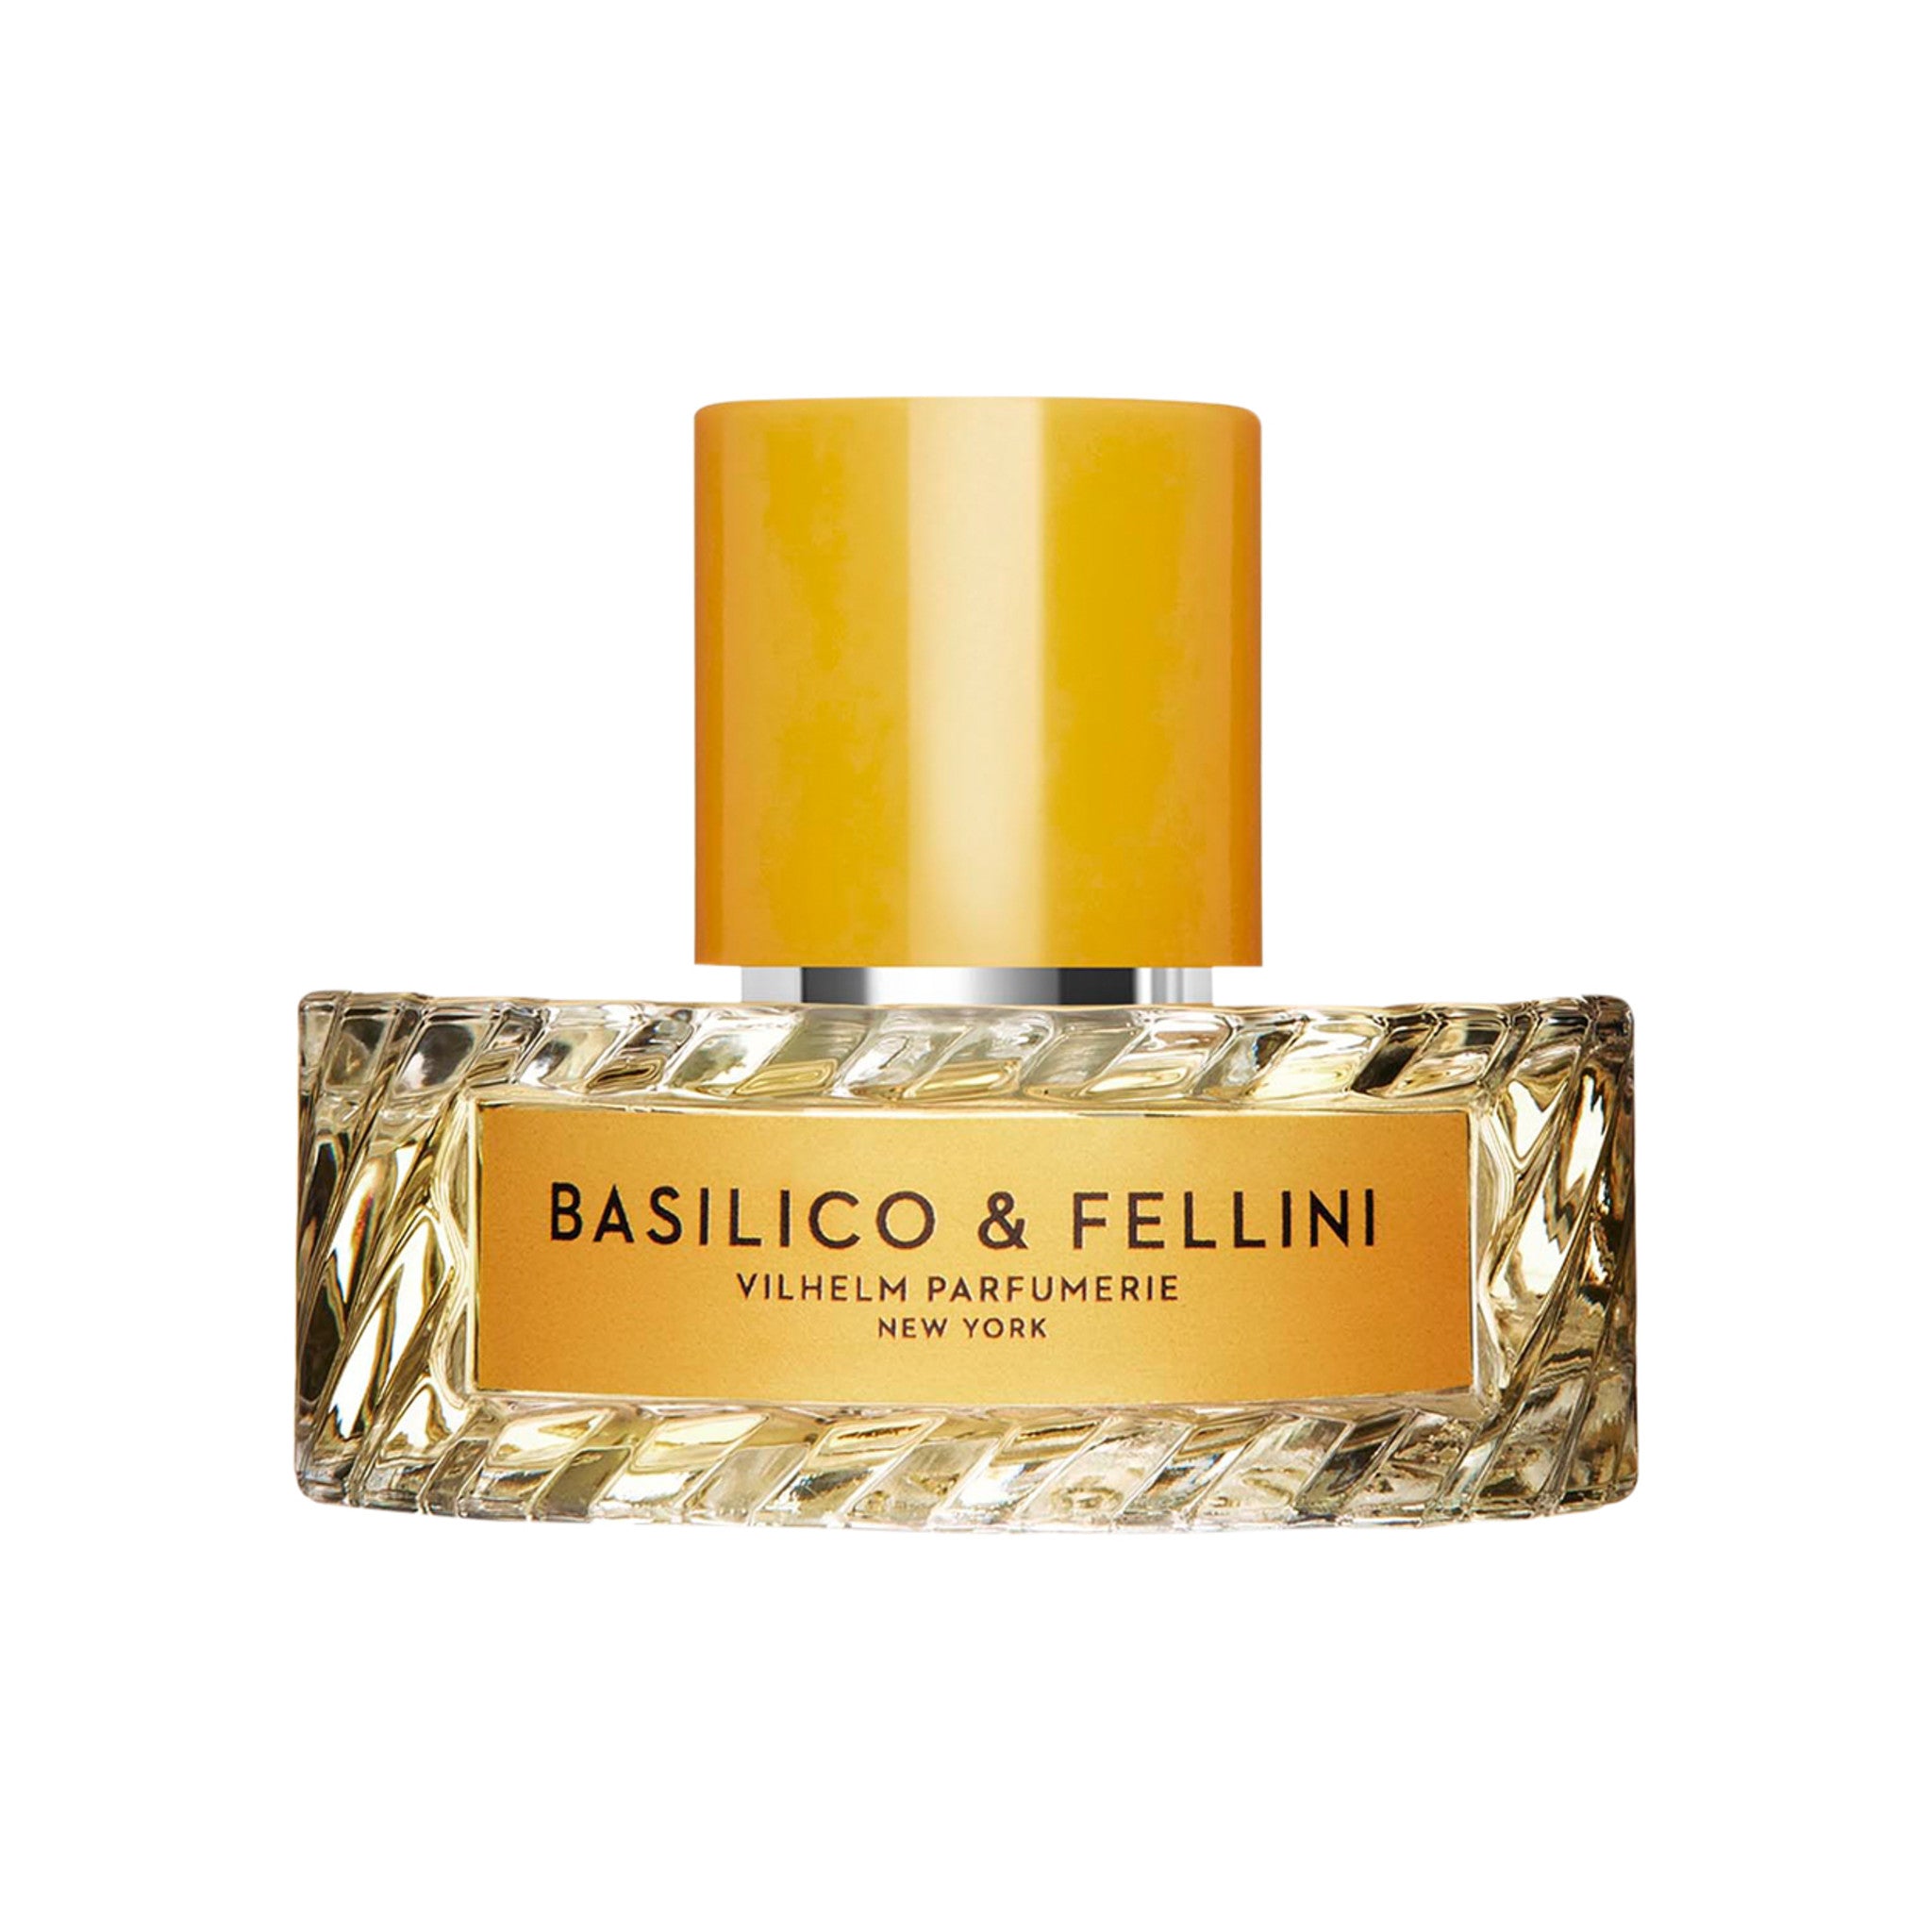 Basilico and Fellini Eau de Parfum main image.